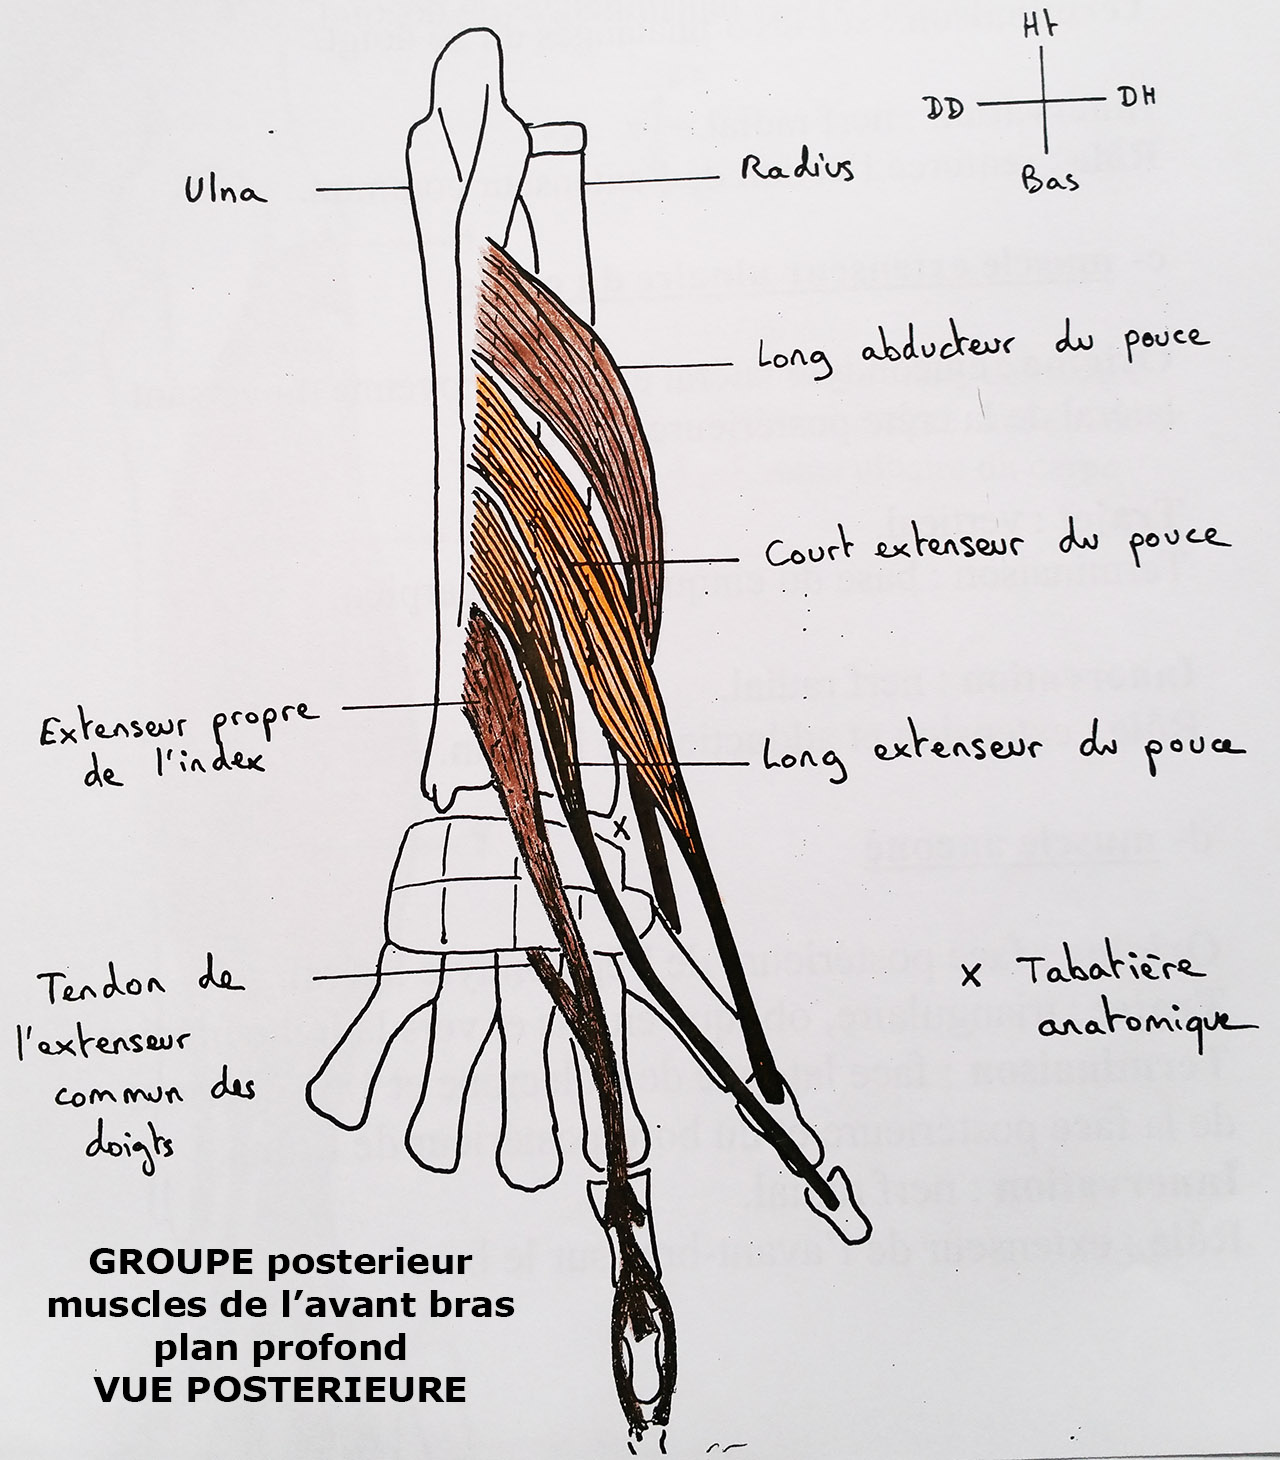 muscle long fléchisseur de l'avant-bras — Wiktionnaire, le dictionnaire  libre